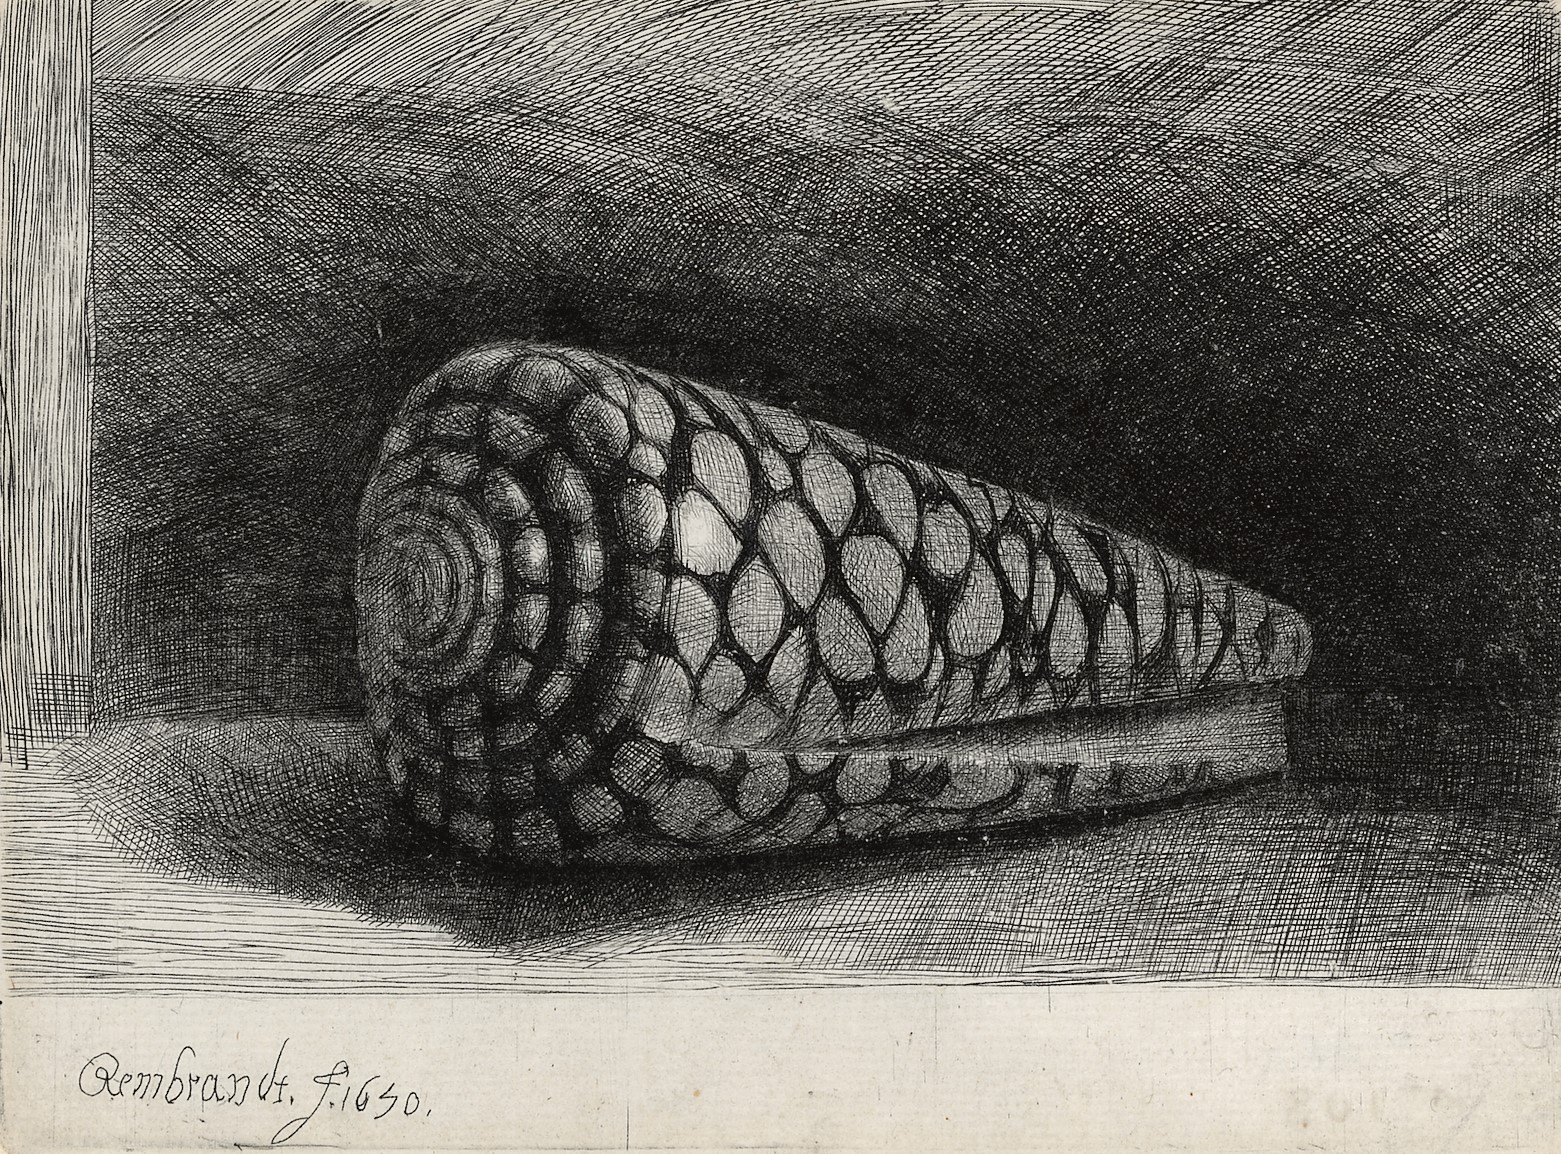 B159(II), Rembrandt, De schelp (Conus Marmoreus), 1650 (1)